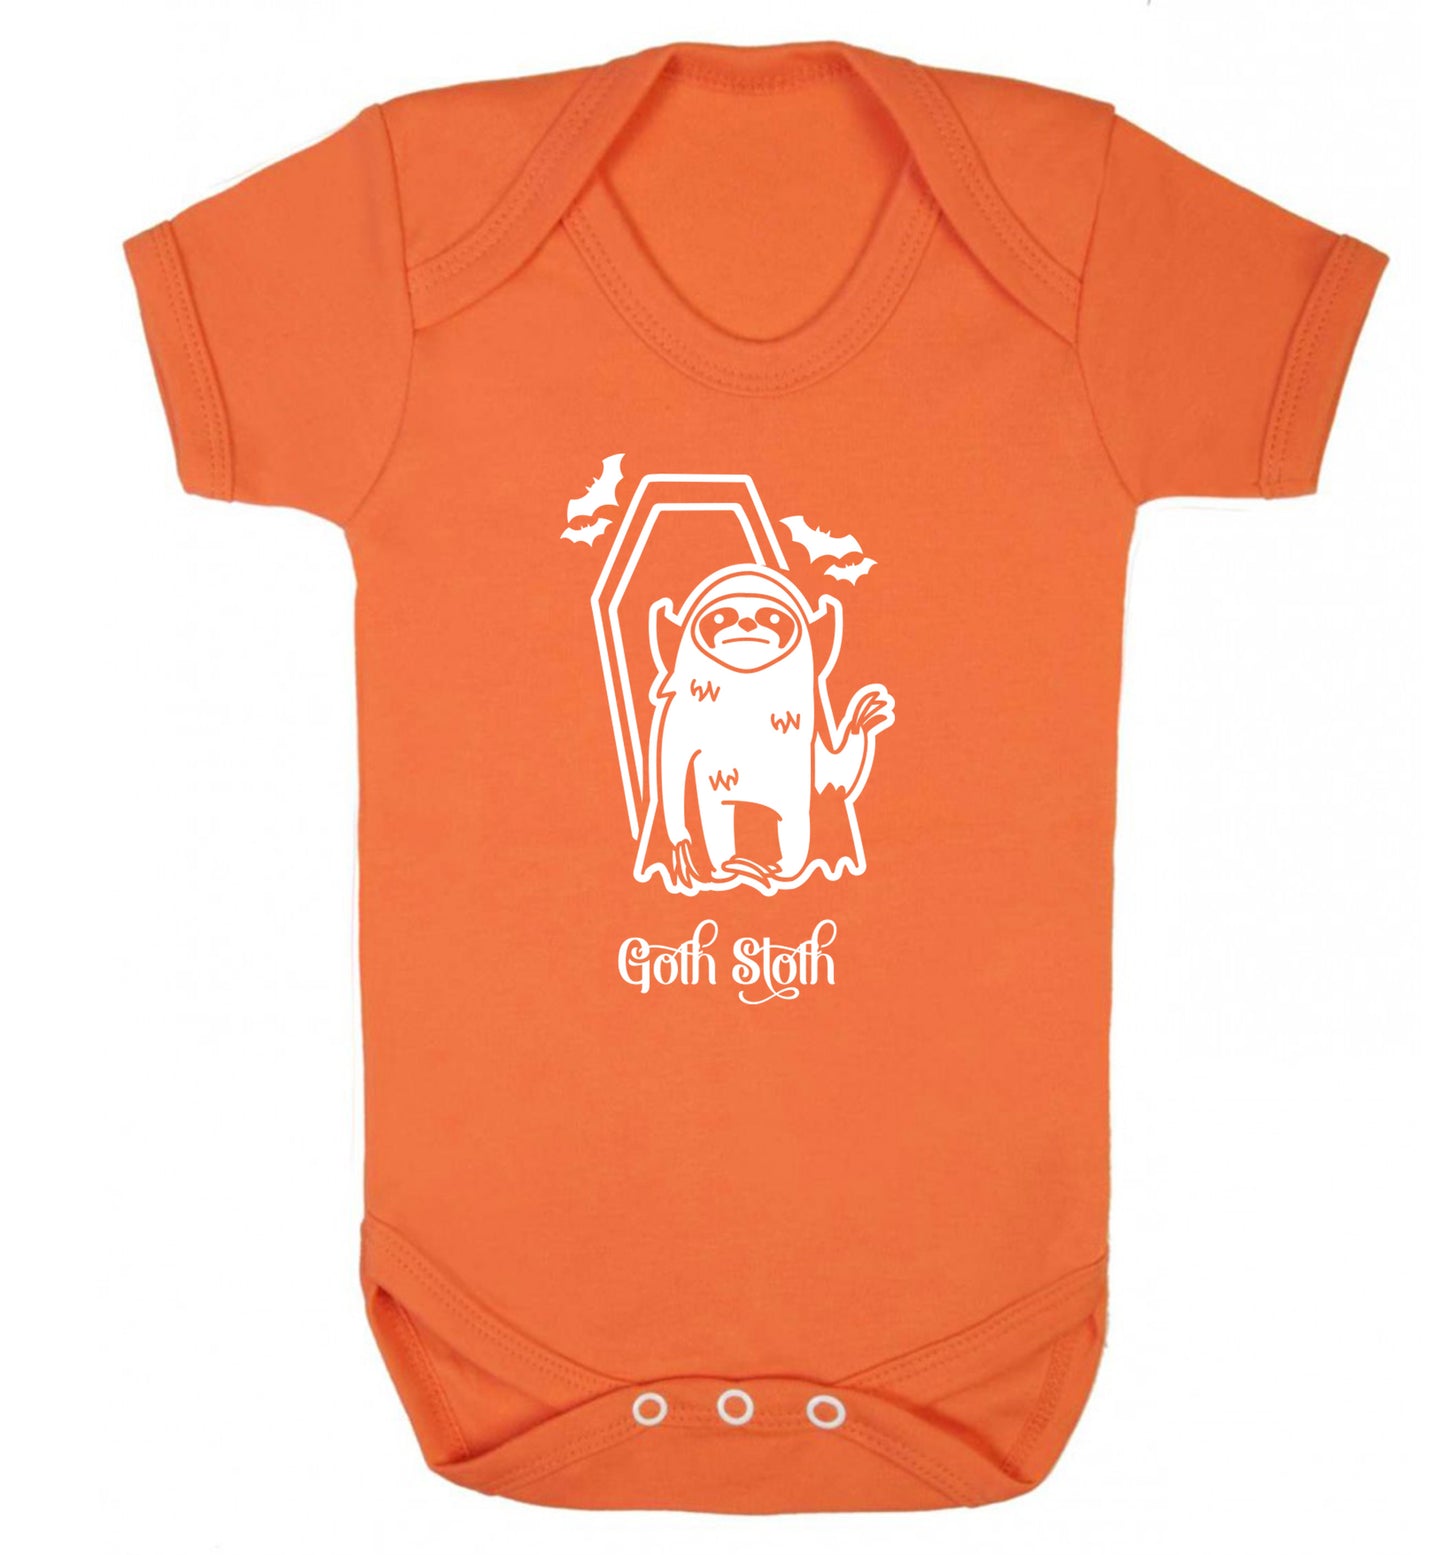 Goth Sloth Baby Vest orange 18-24 months